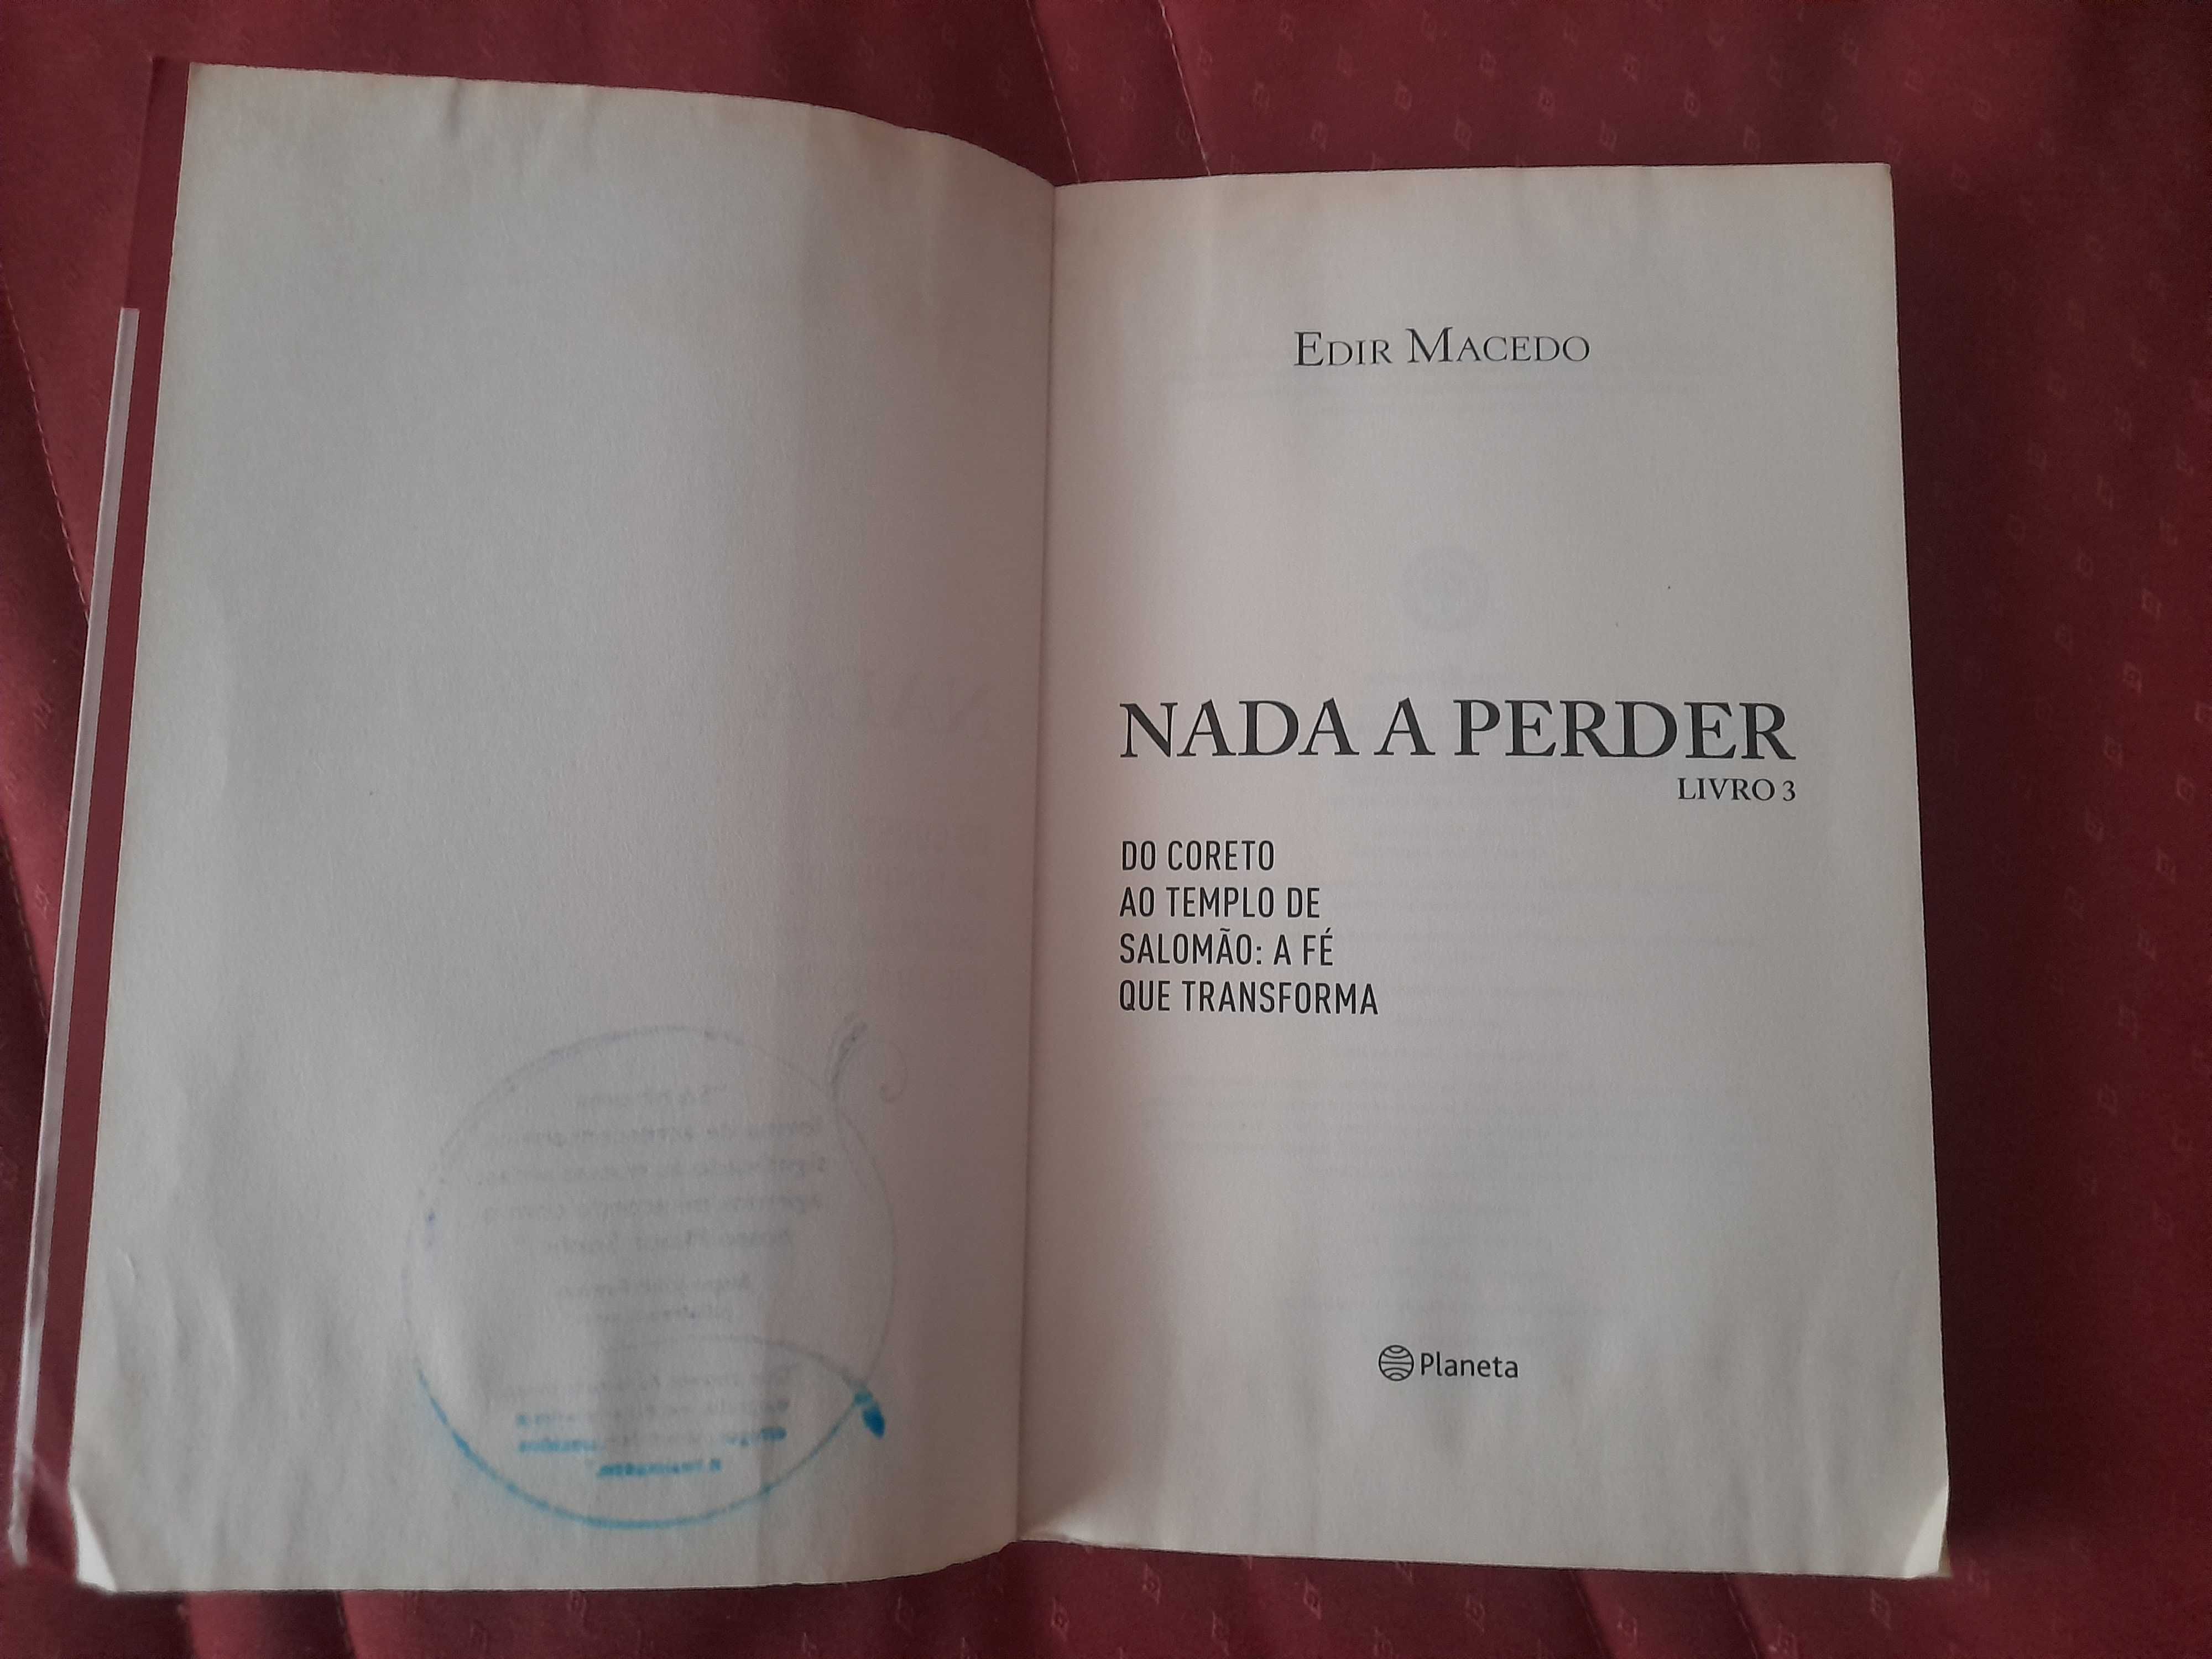 Livro "Nada a Perder" de Edir Macedo